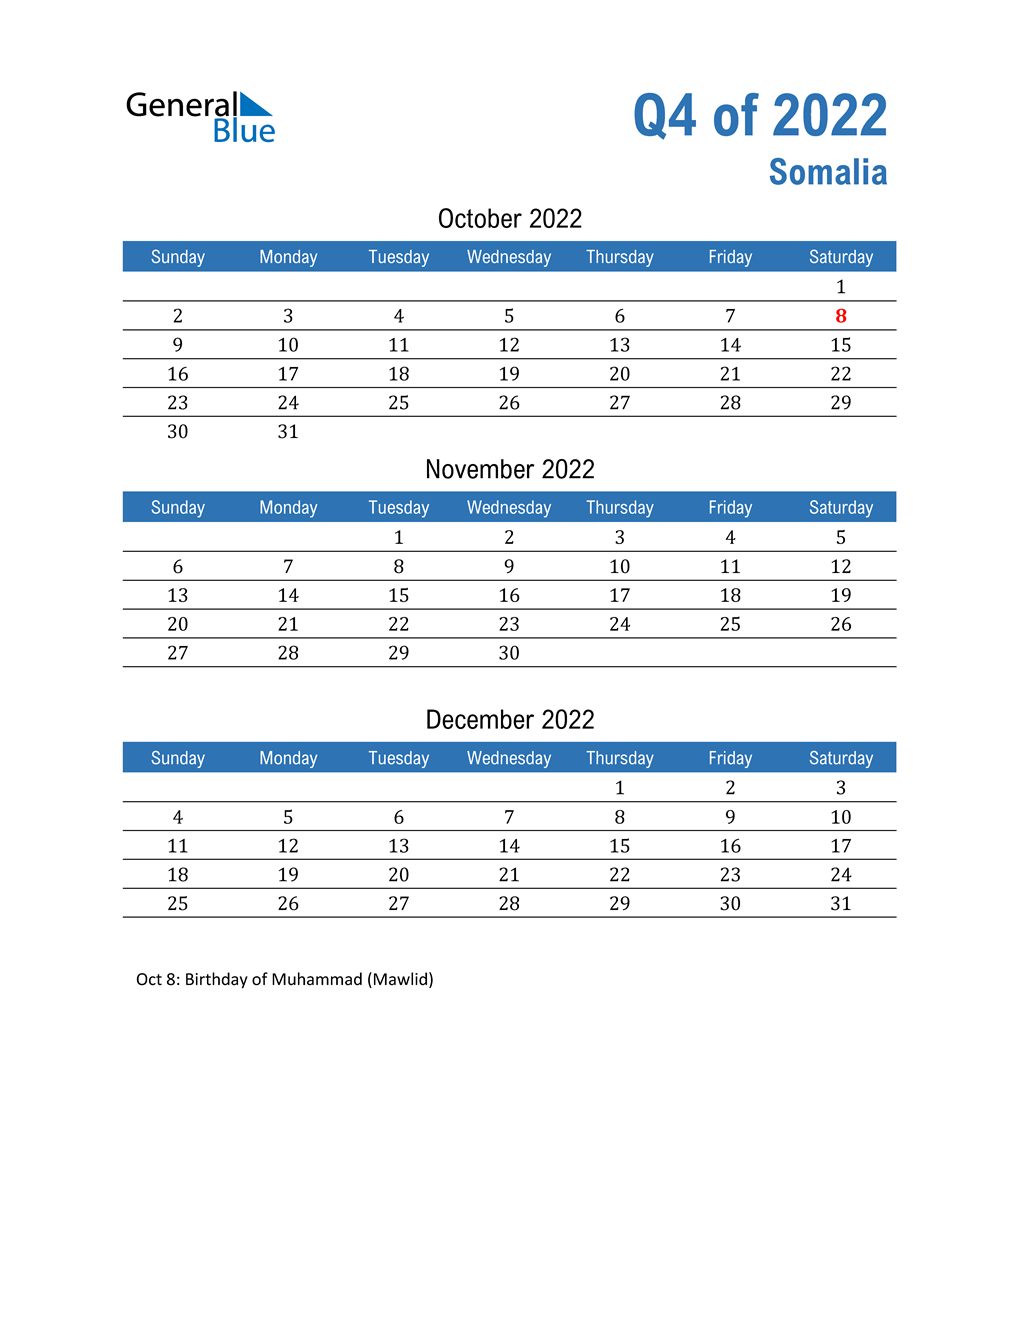  Somalia 2022 Quarterly Calendar 